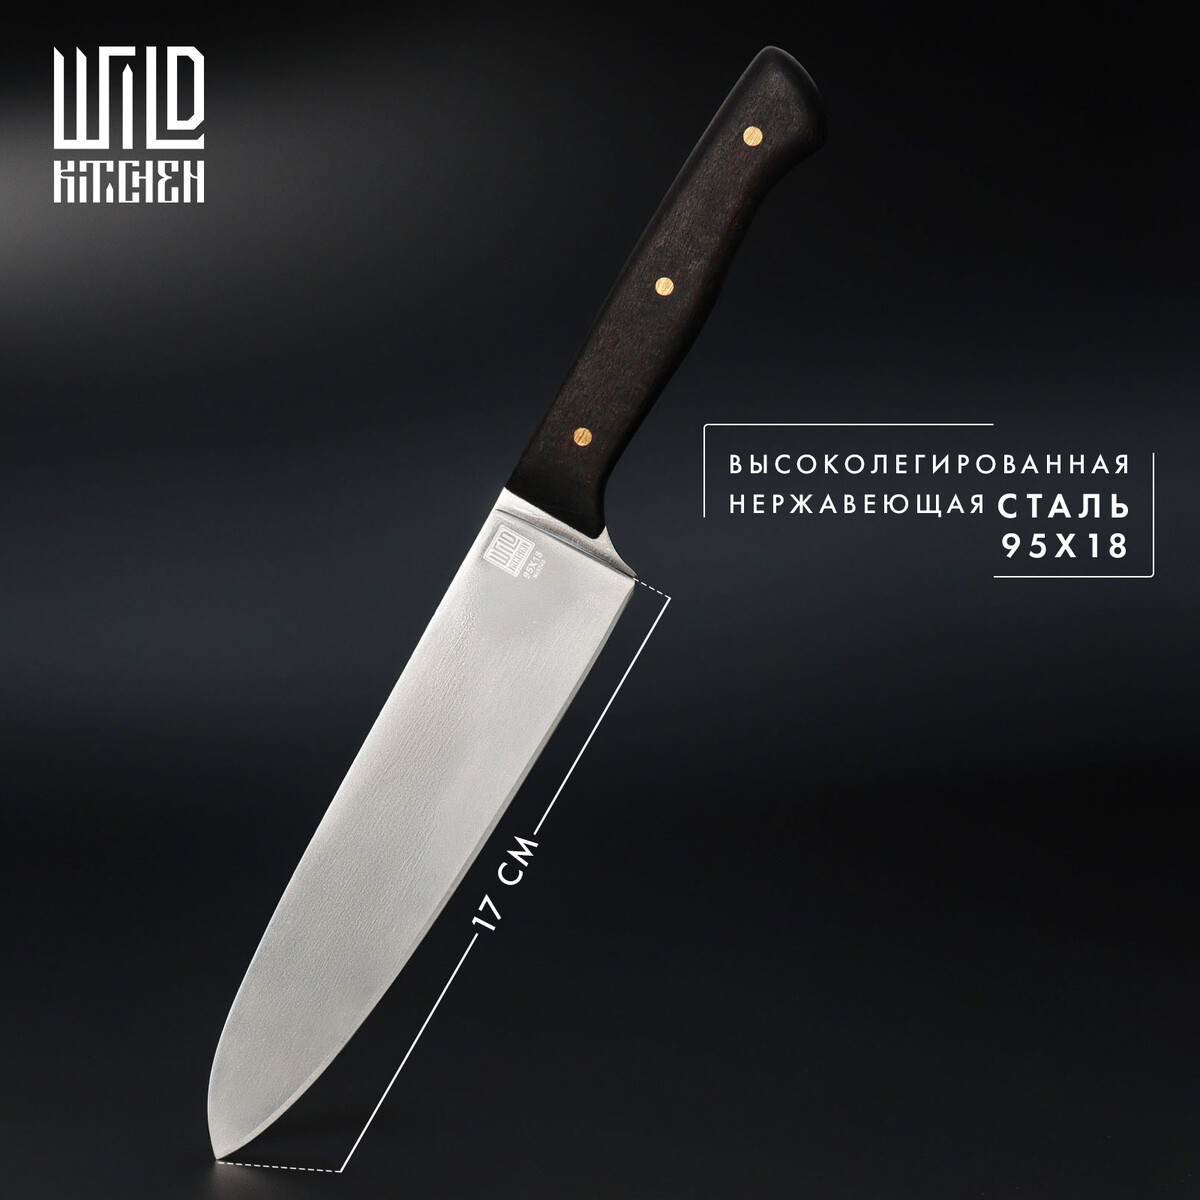 Нож кухонный - шеф wild kitchen, сталь 95×18, лезвие 17 см нож универсальный складной тундра деревянная рукоятка прямое лезвие нержавеющая сталь